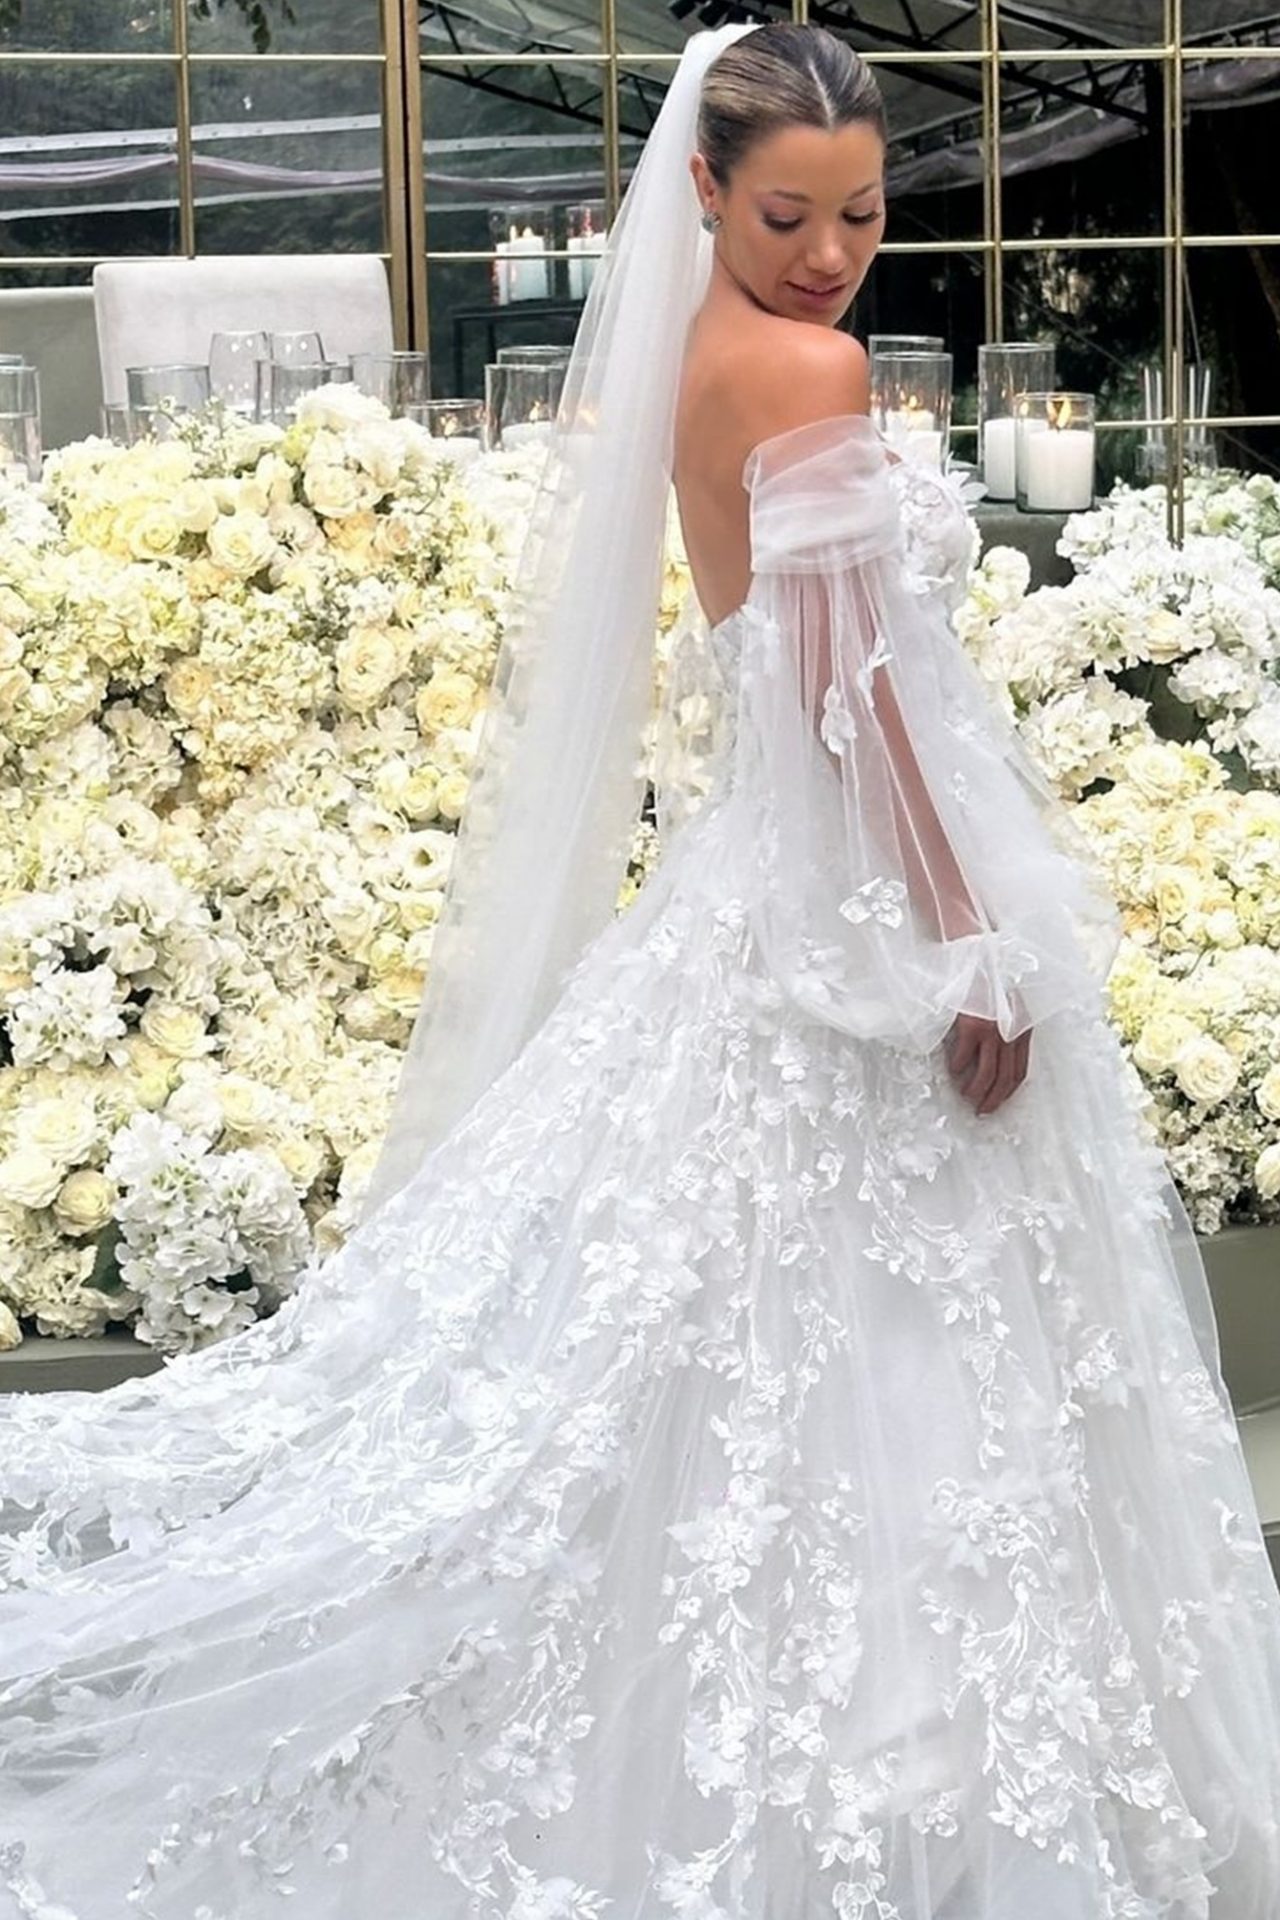 Isa y su vestido de novia 